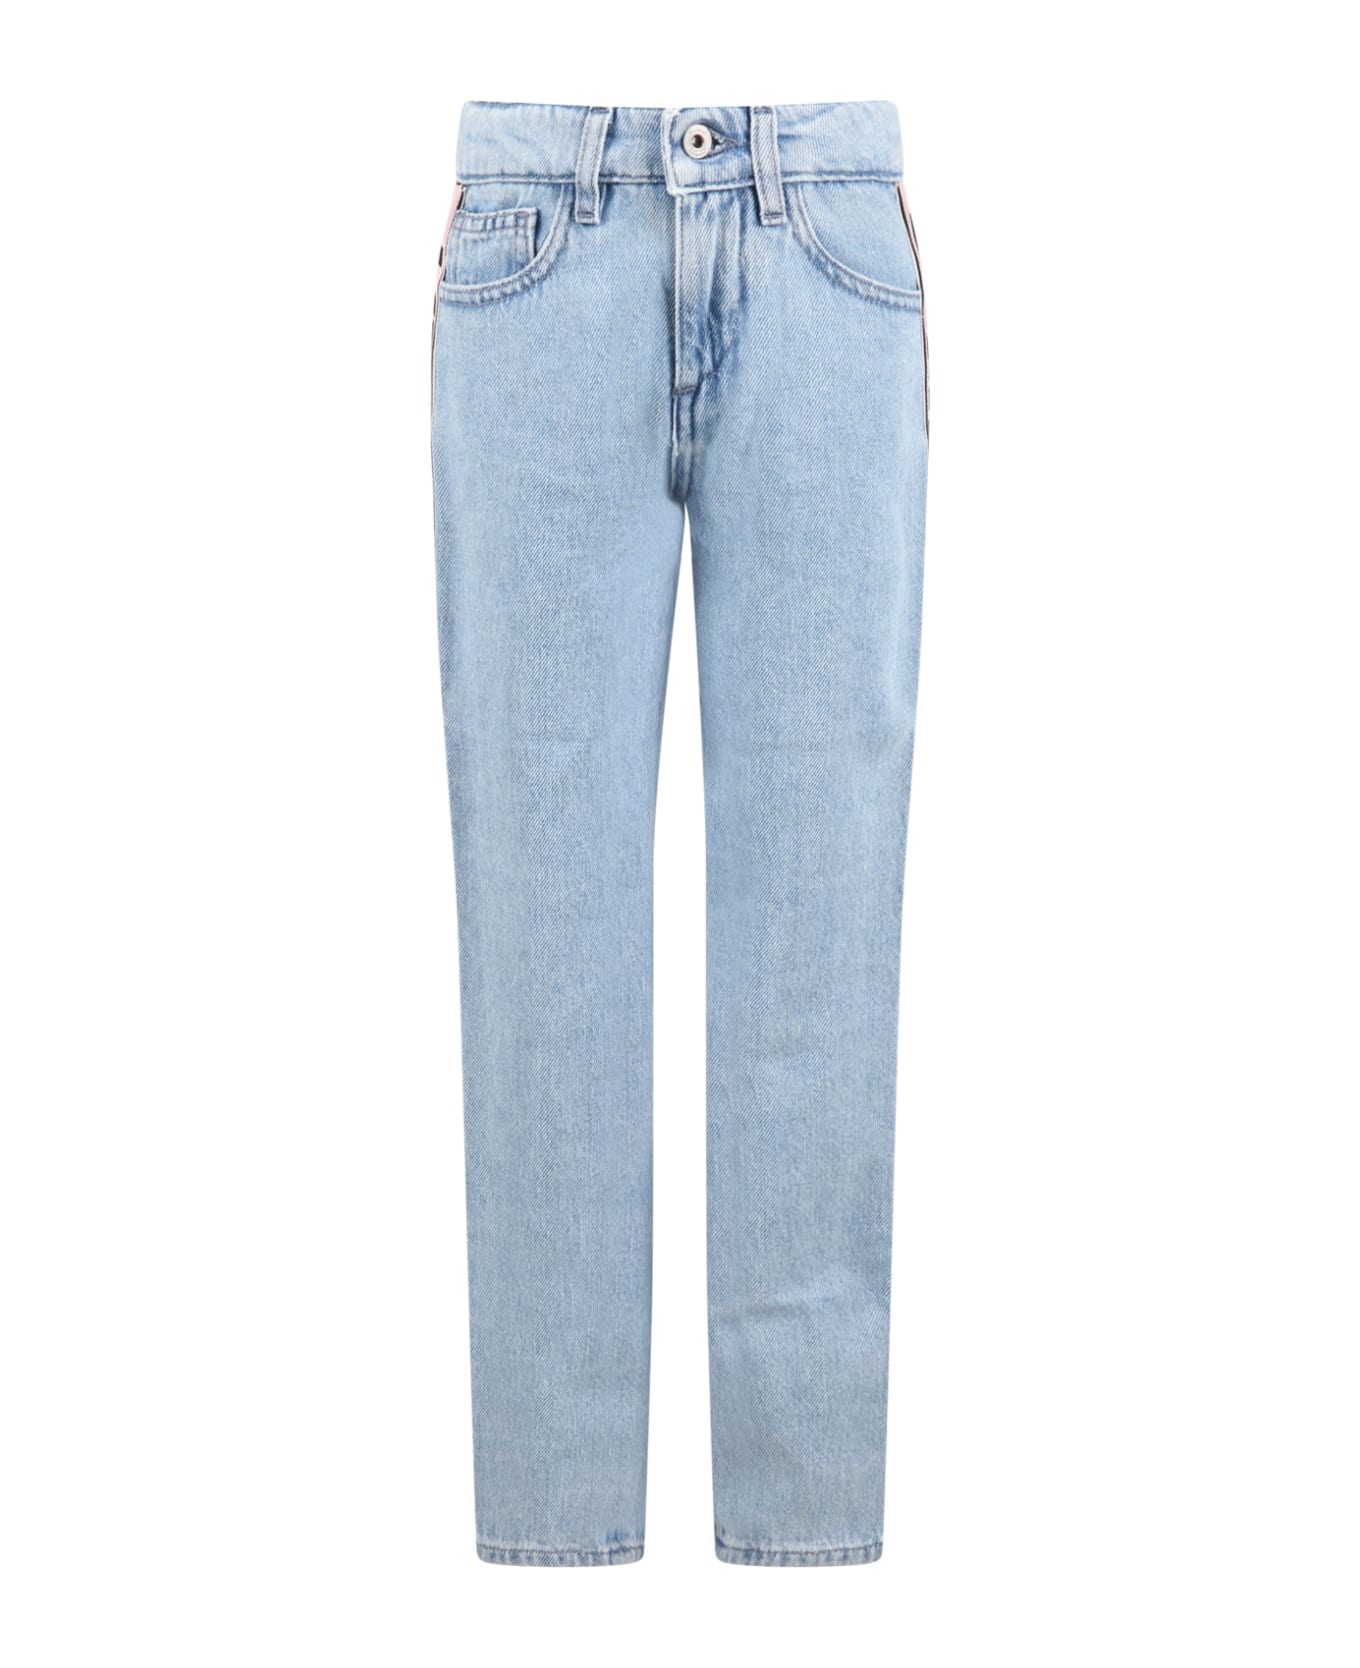 Off-White Light-blue Jeans For Girl With Logo - Denim